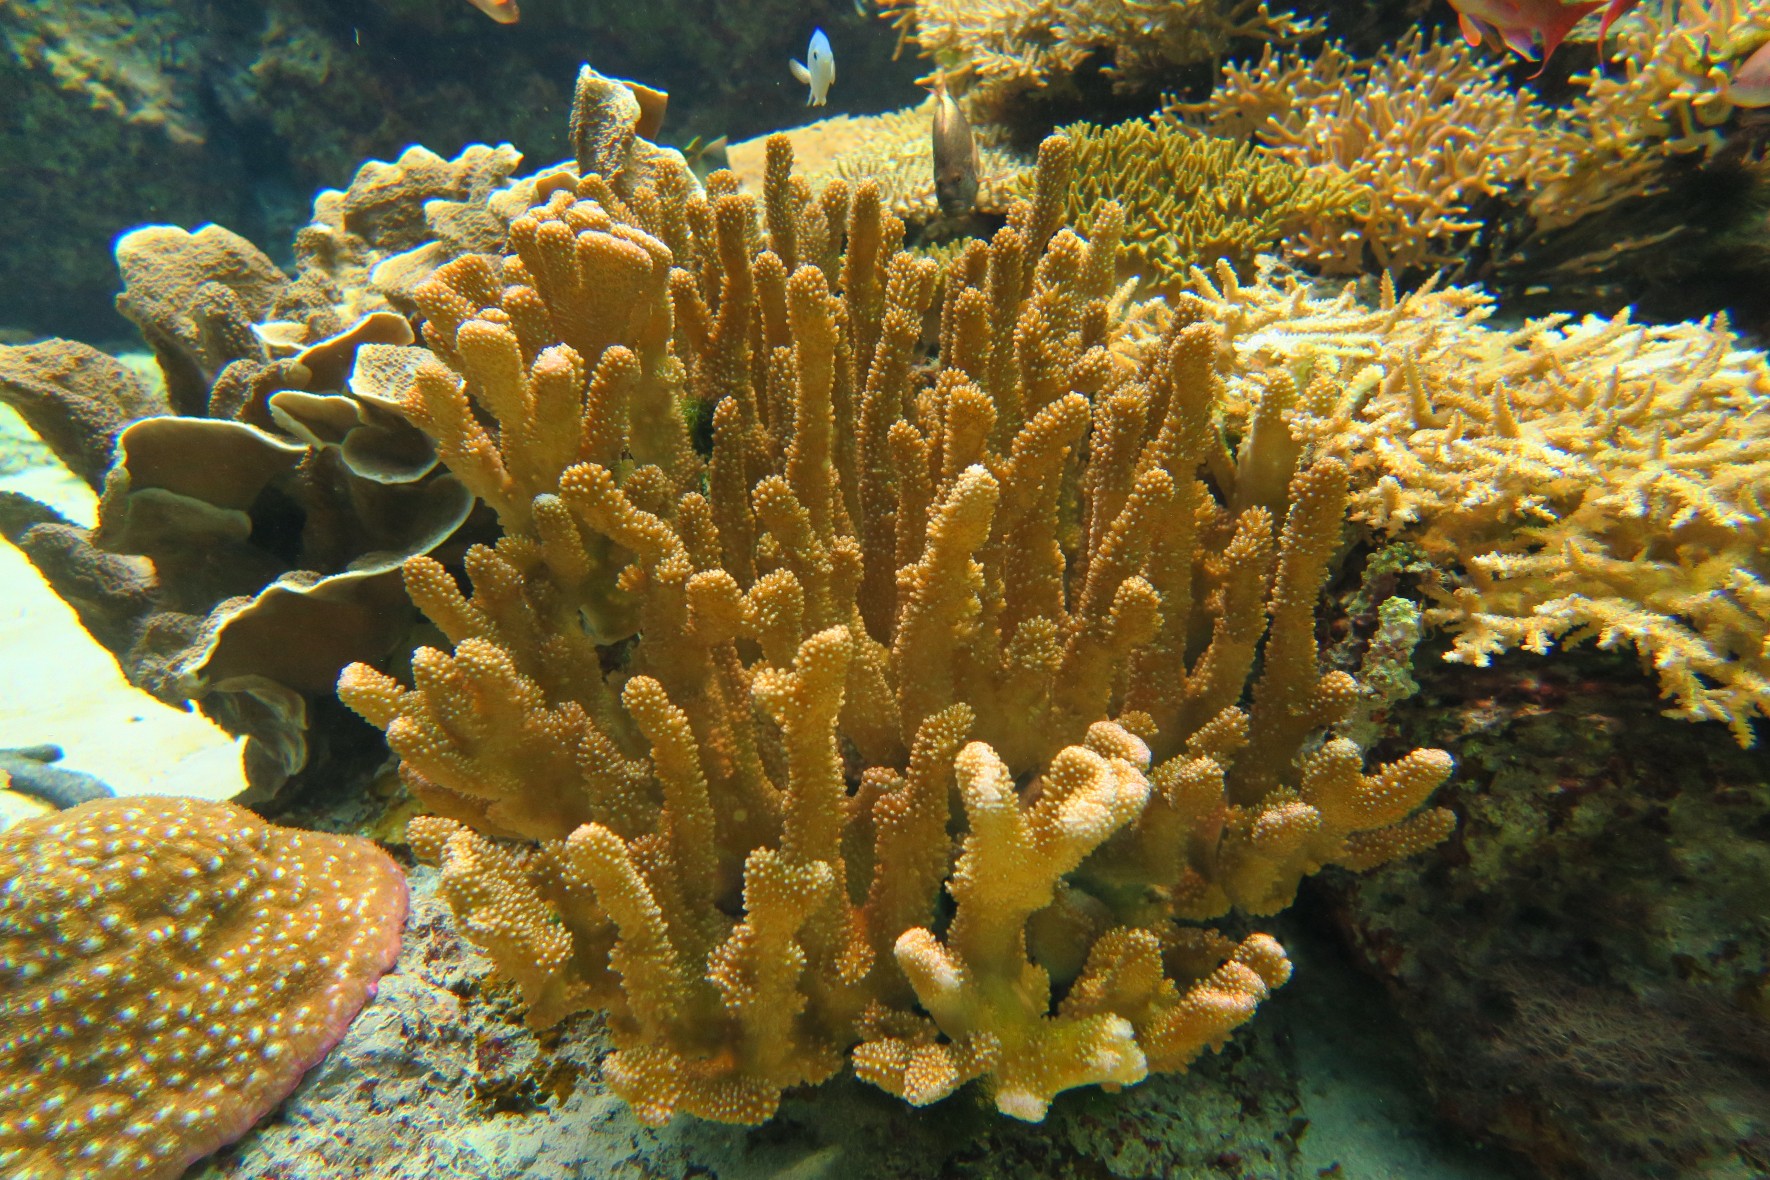 Antler coral